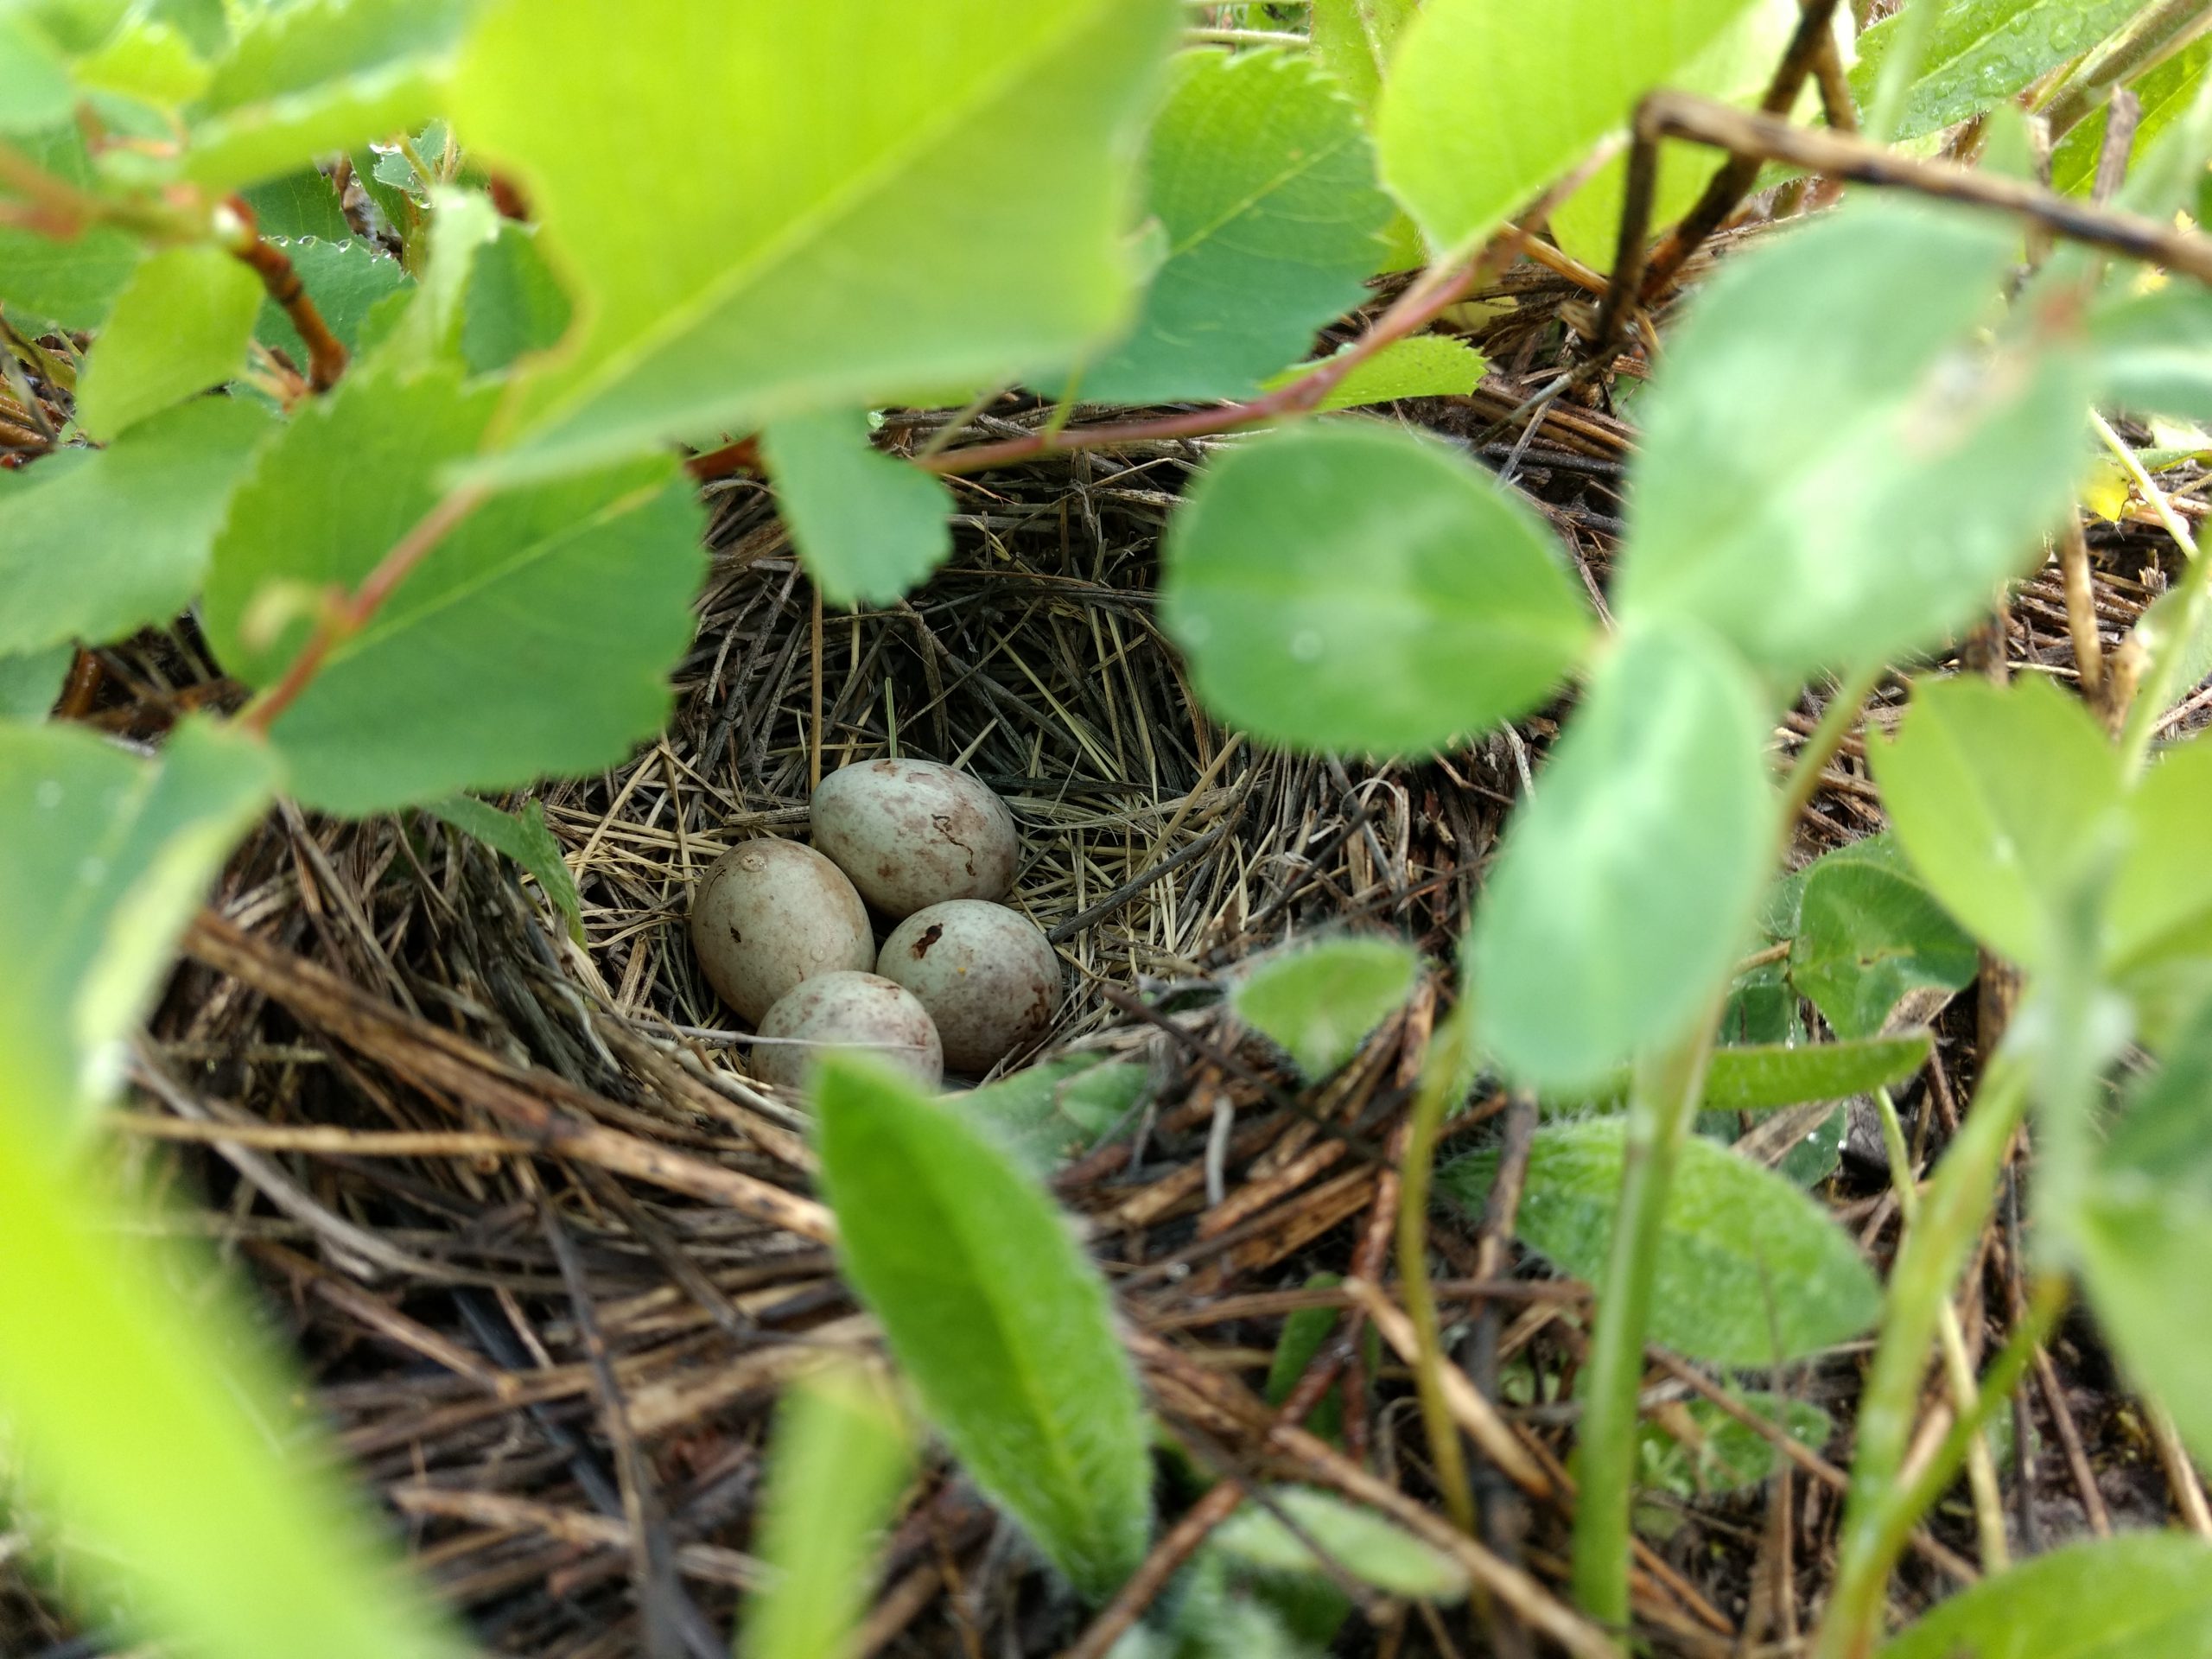 Savannah Sparrow nest with eggs.